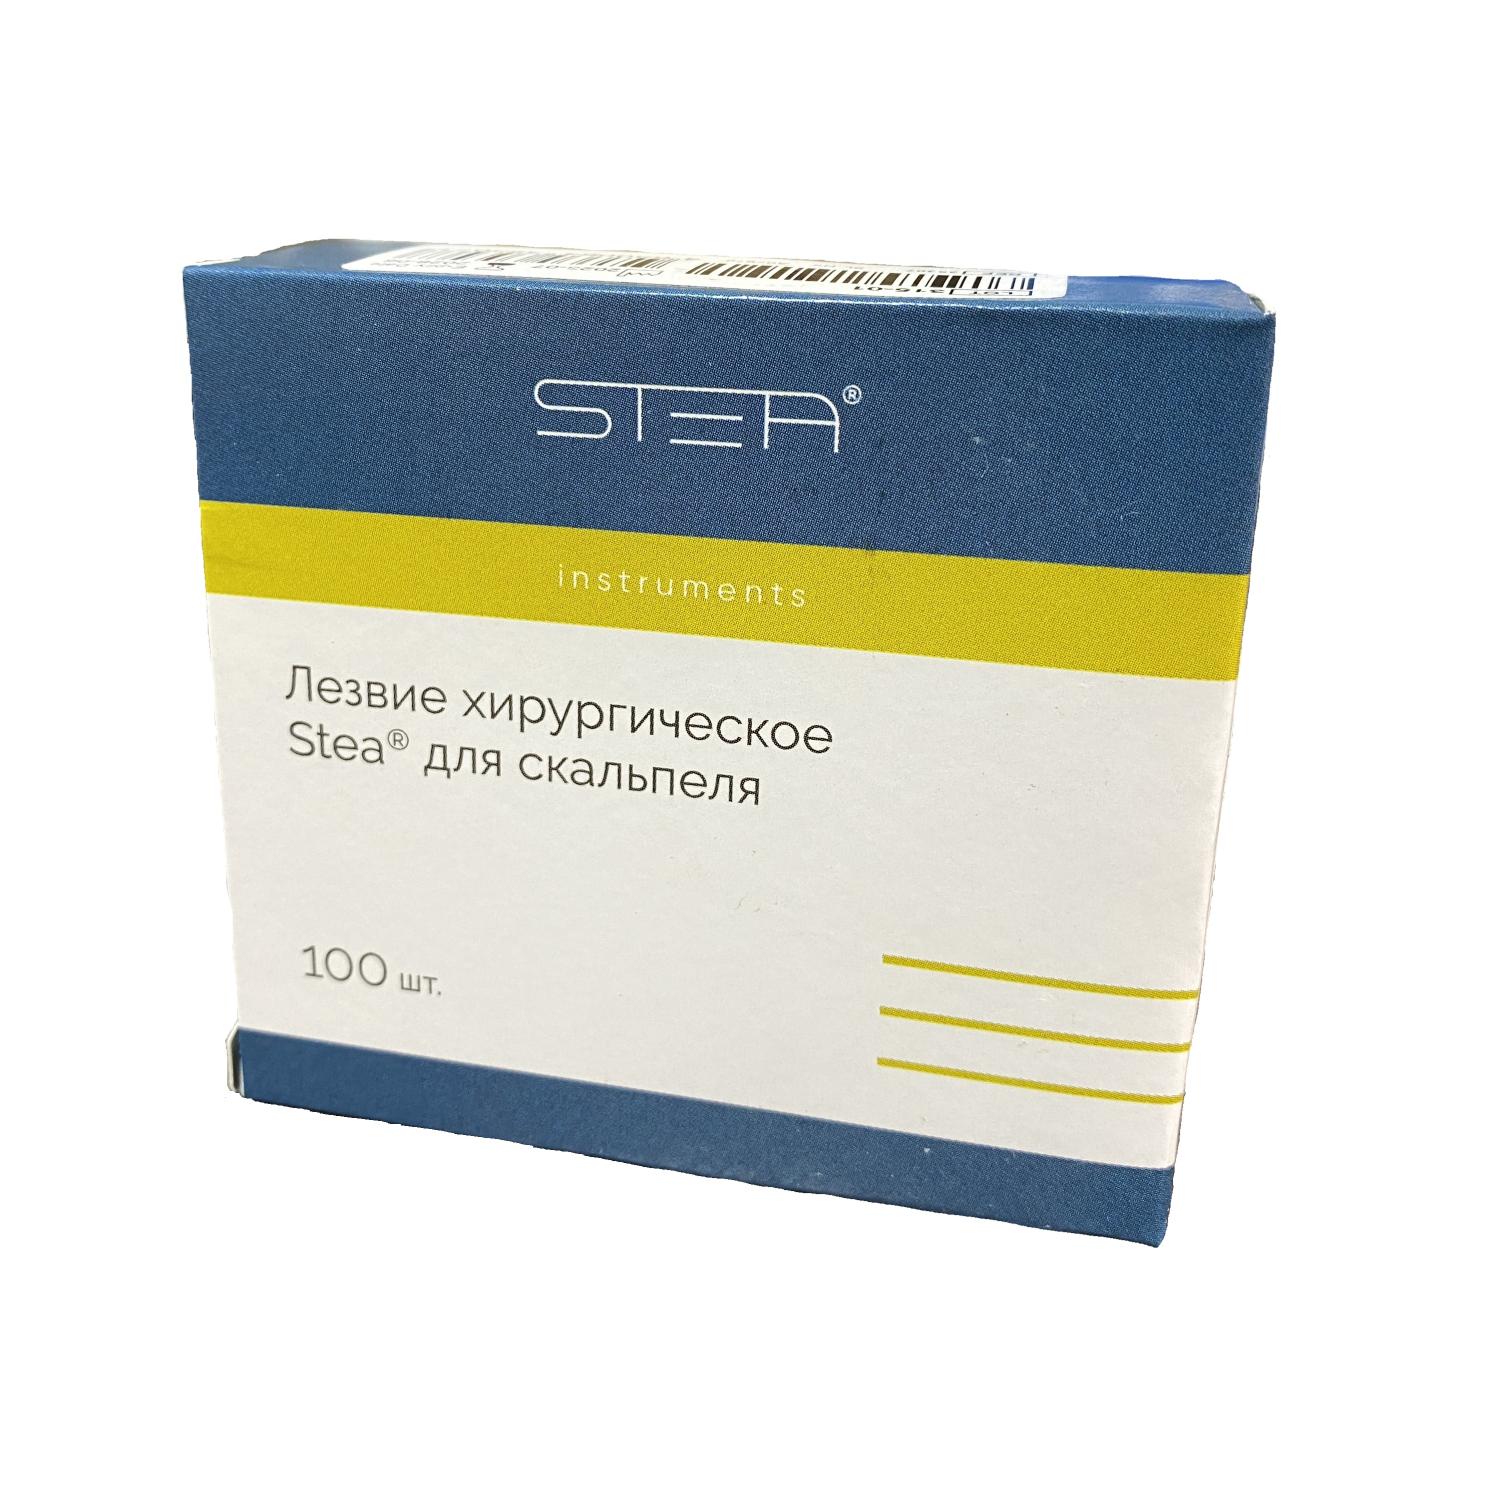 Лезвие хирургическое Stea® для скальпеля № 12D, стерильное, упаковка 100 шт. 35307